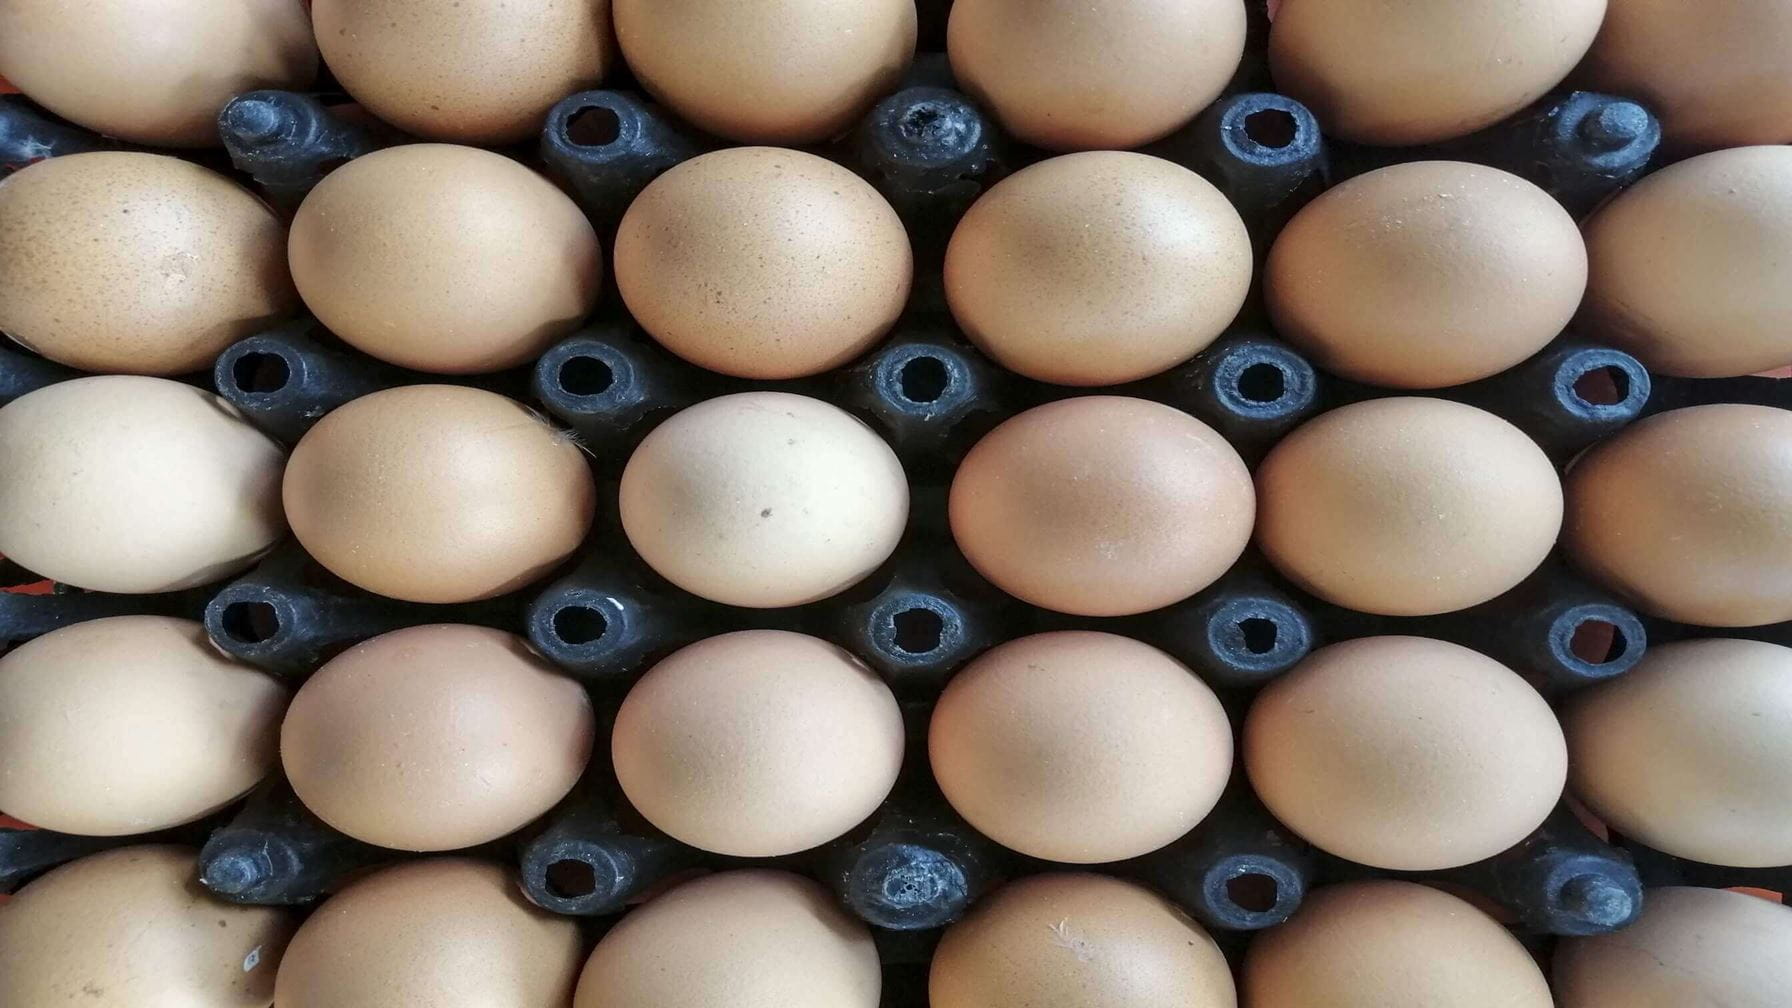 Stroom leveren op een afgelegen locatie voor een eierproducent